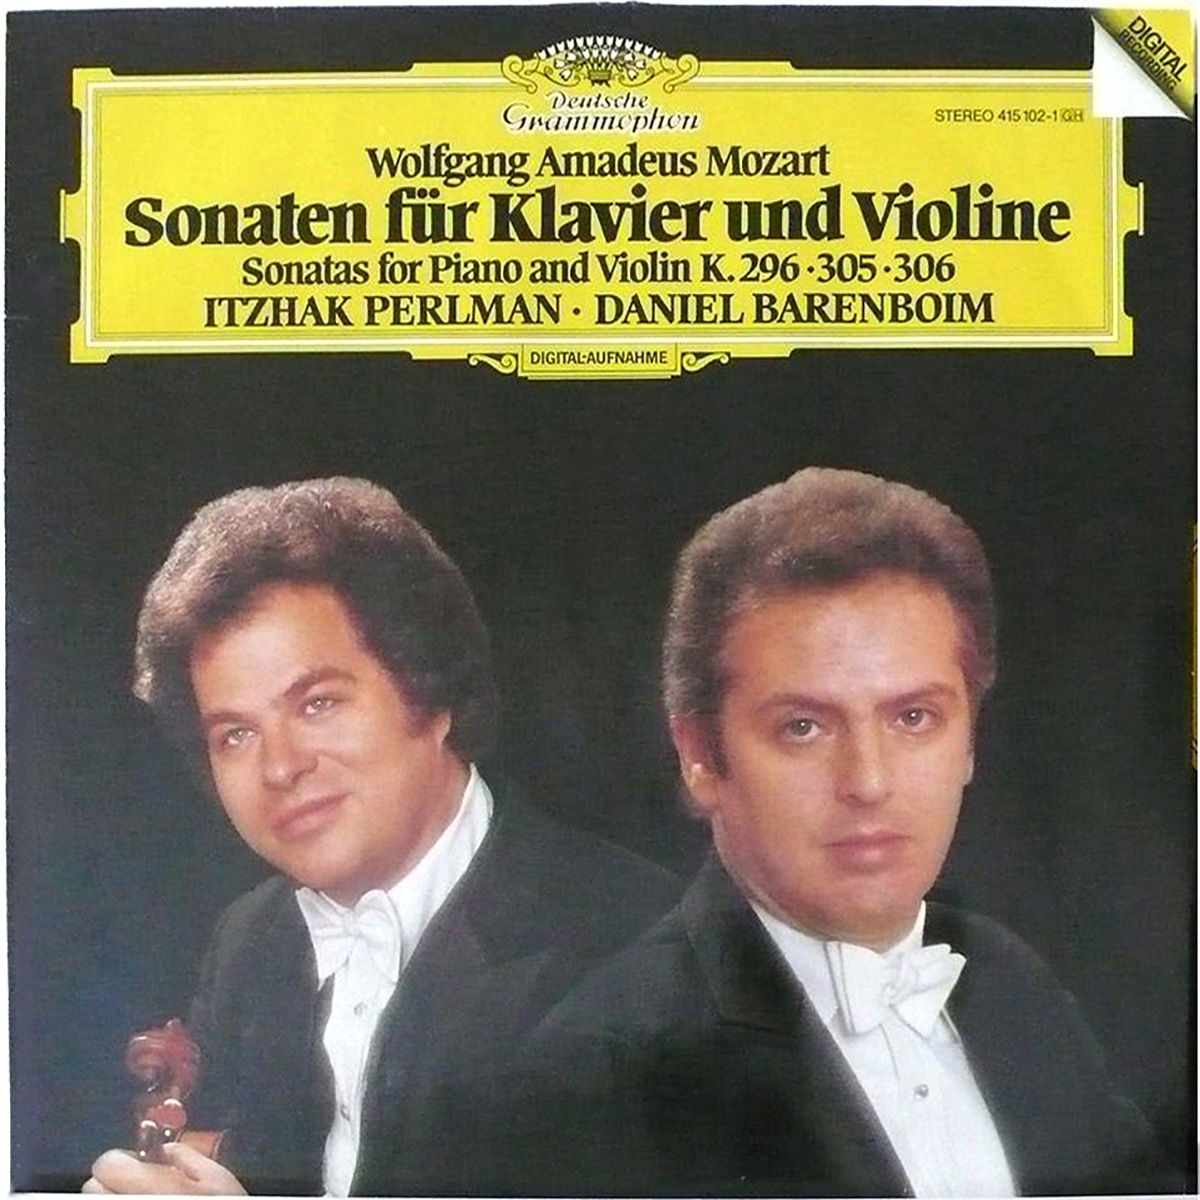 DGG 415 102 Mozart Sonates Piano Violon Perlman Barenboim DGG Digital Aufnahme